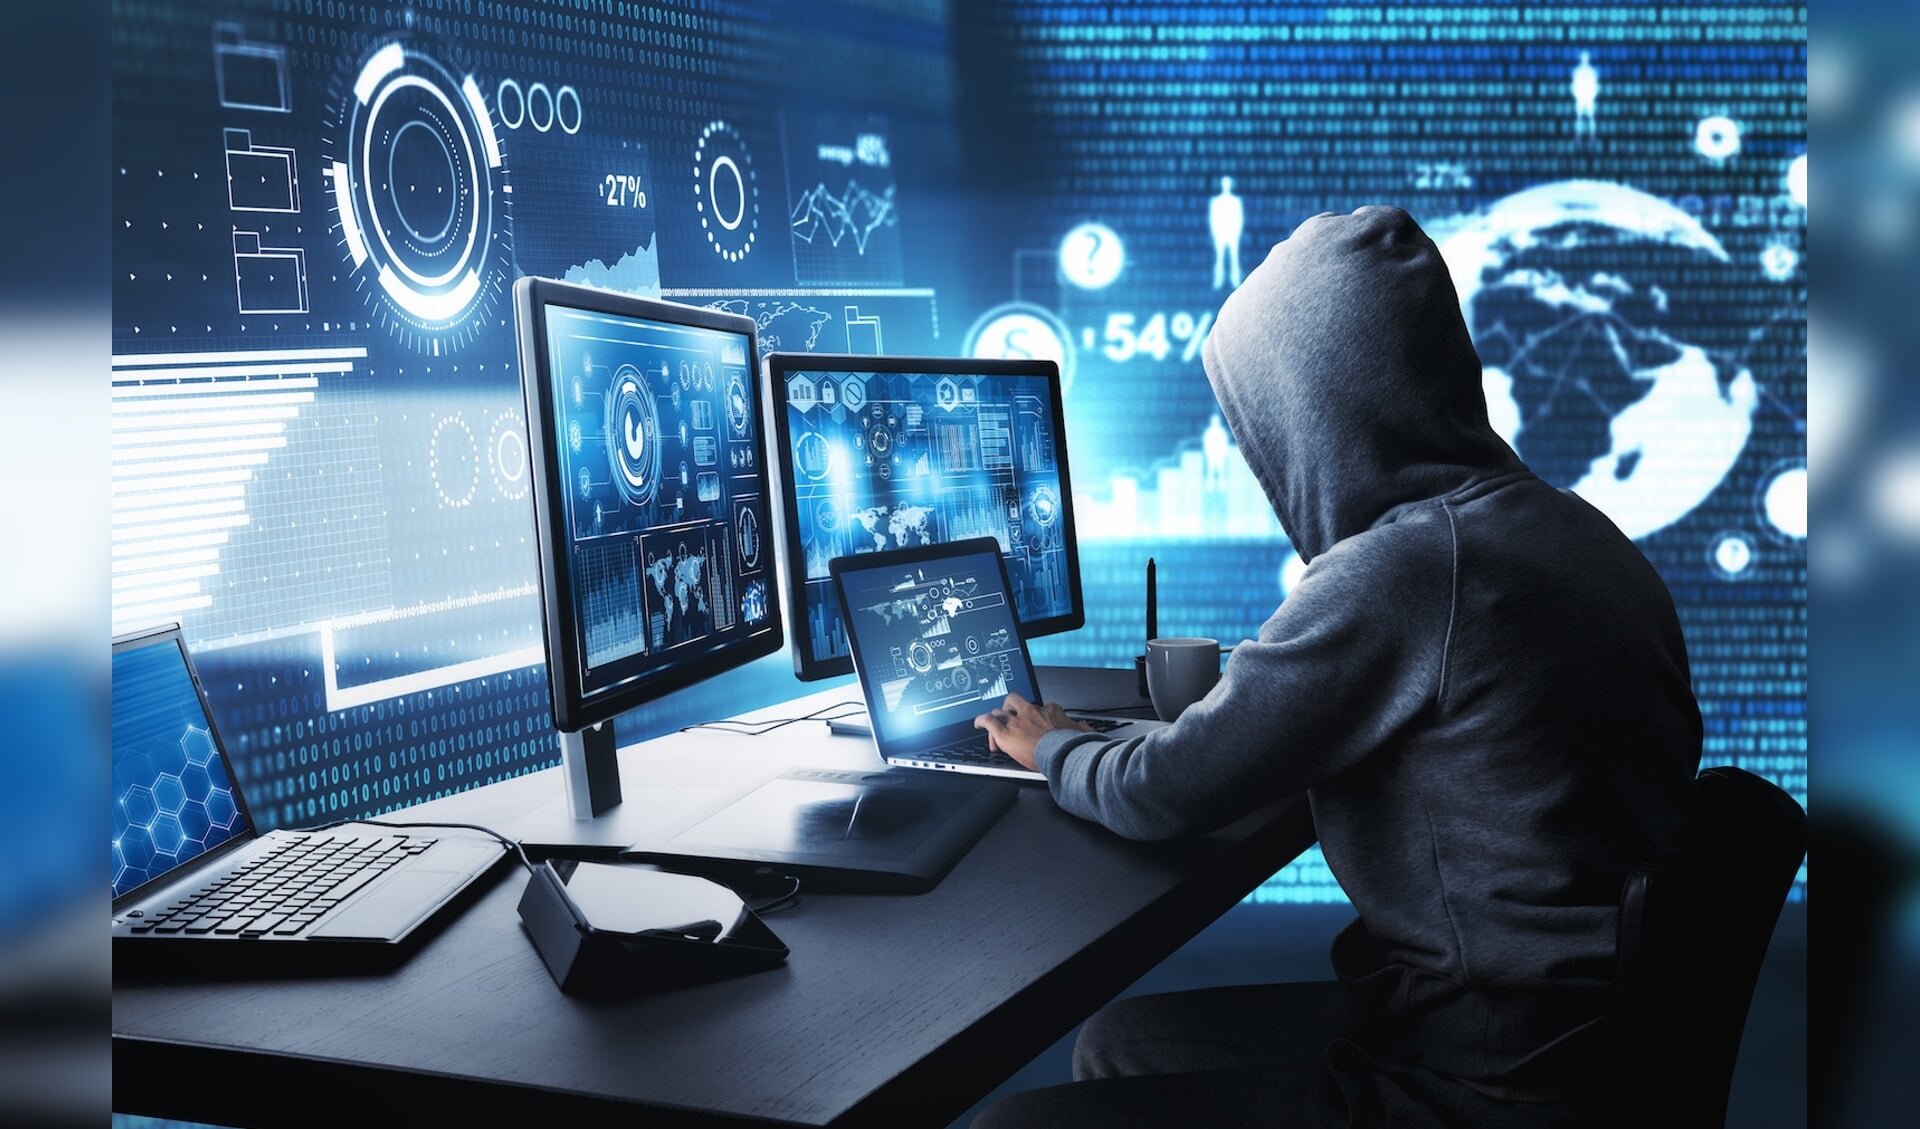 Bewaak de computer goed tegen criminelen met een firewall.